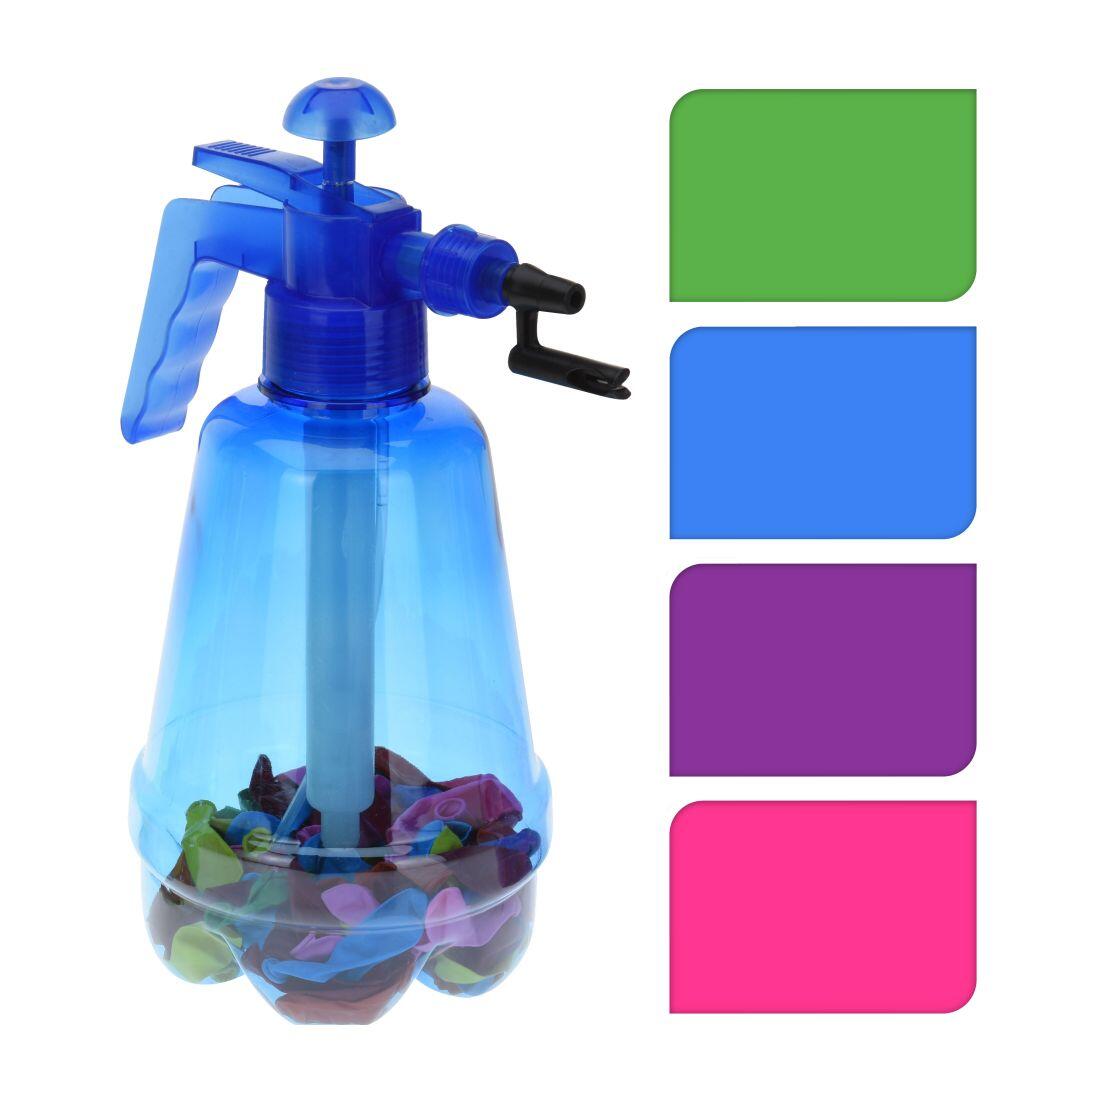 pumpička na vodní bomby 1,7l + balonky (100ks) mix barev 0.2 Kg MAXMIX Sklad14 385997 59